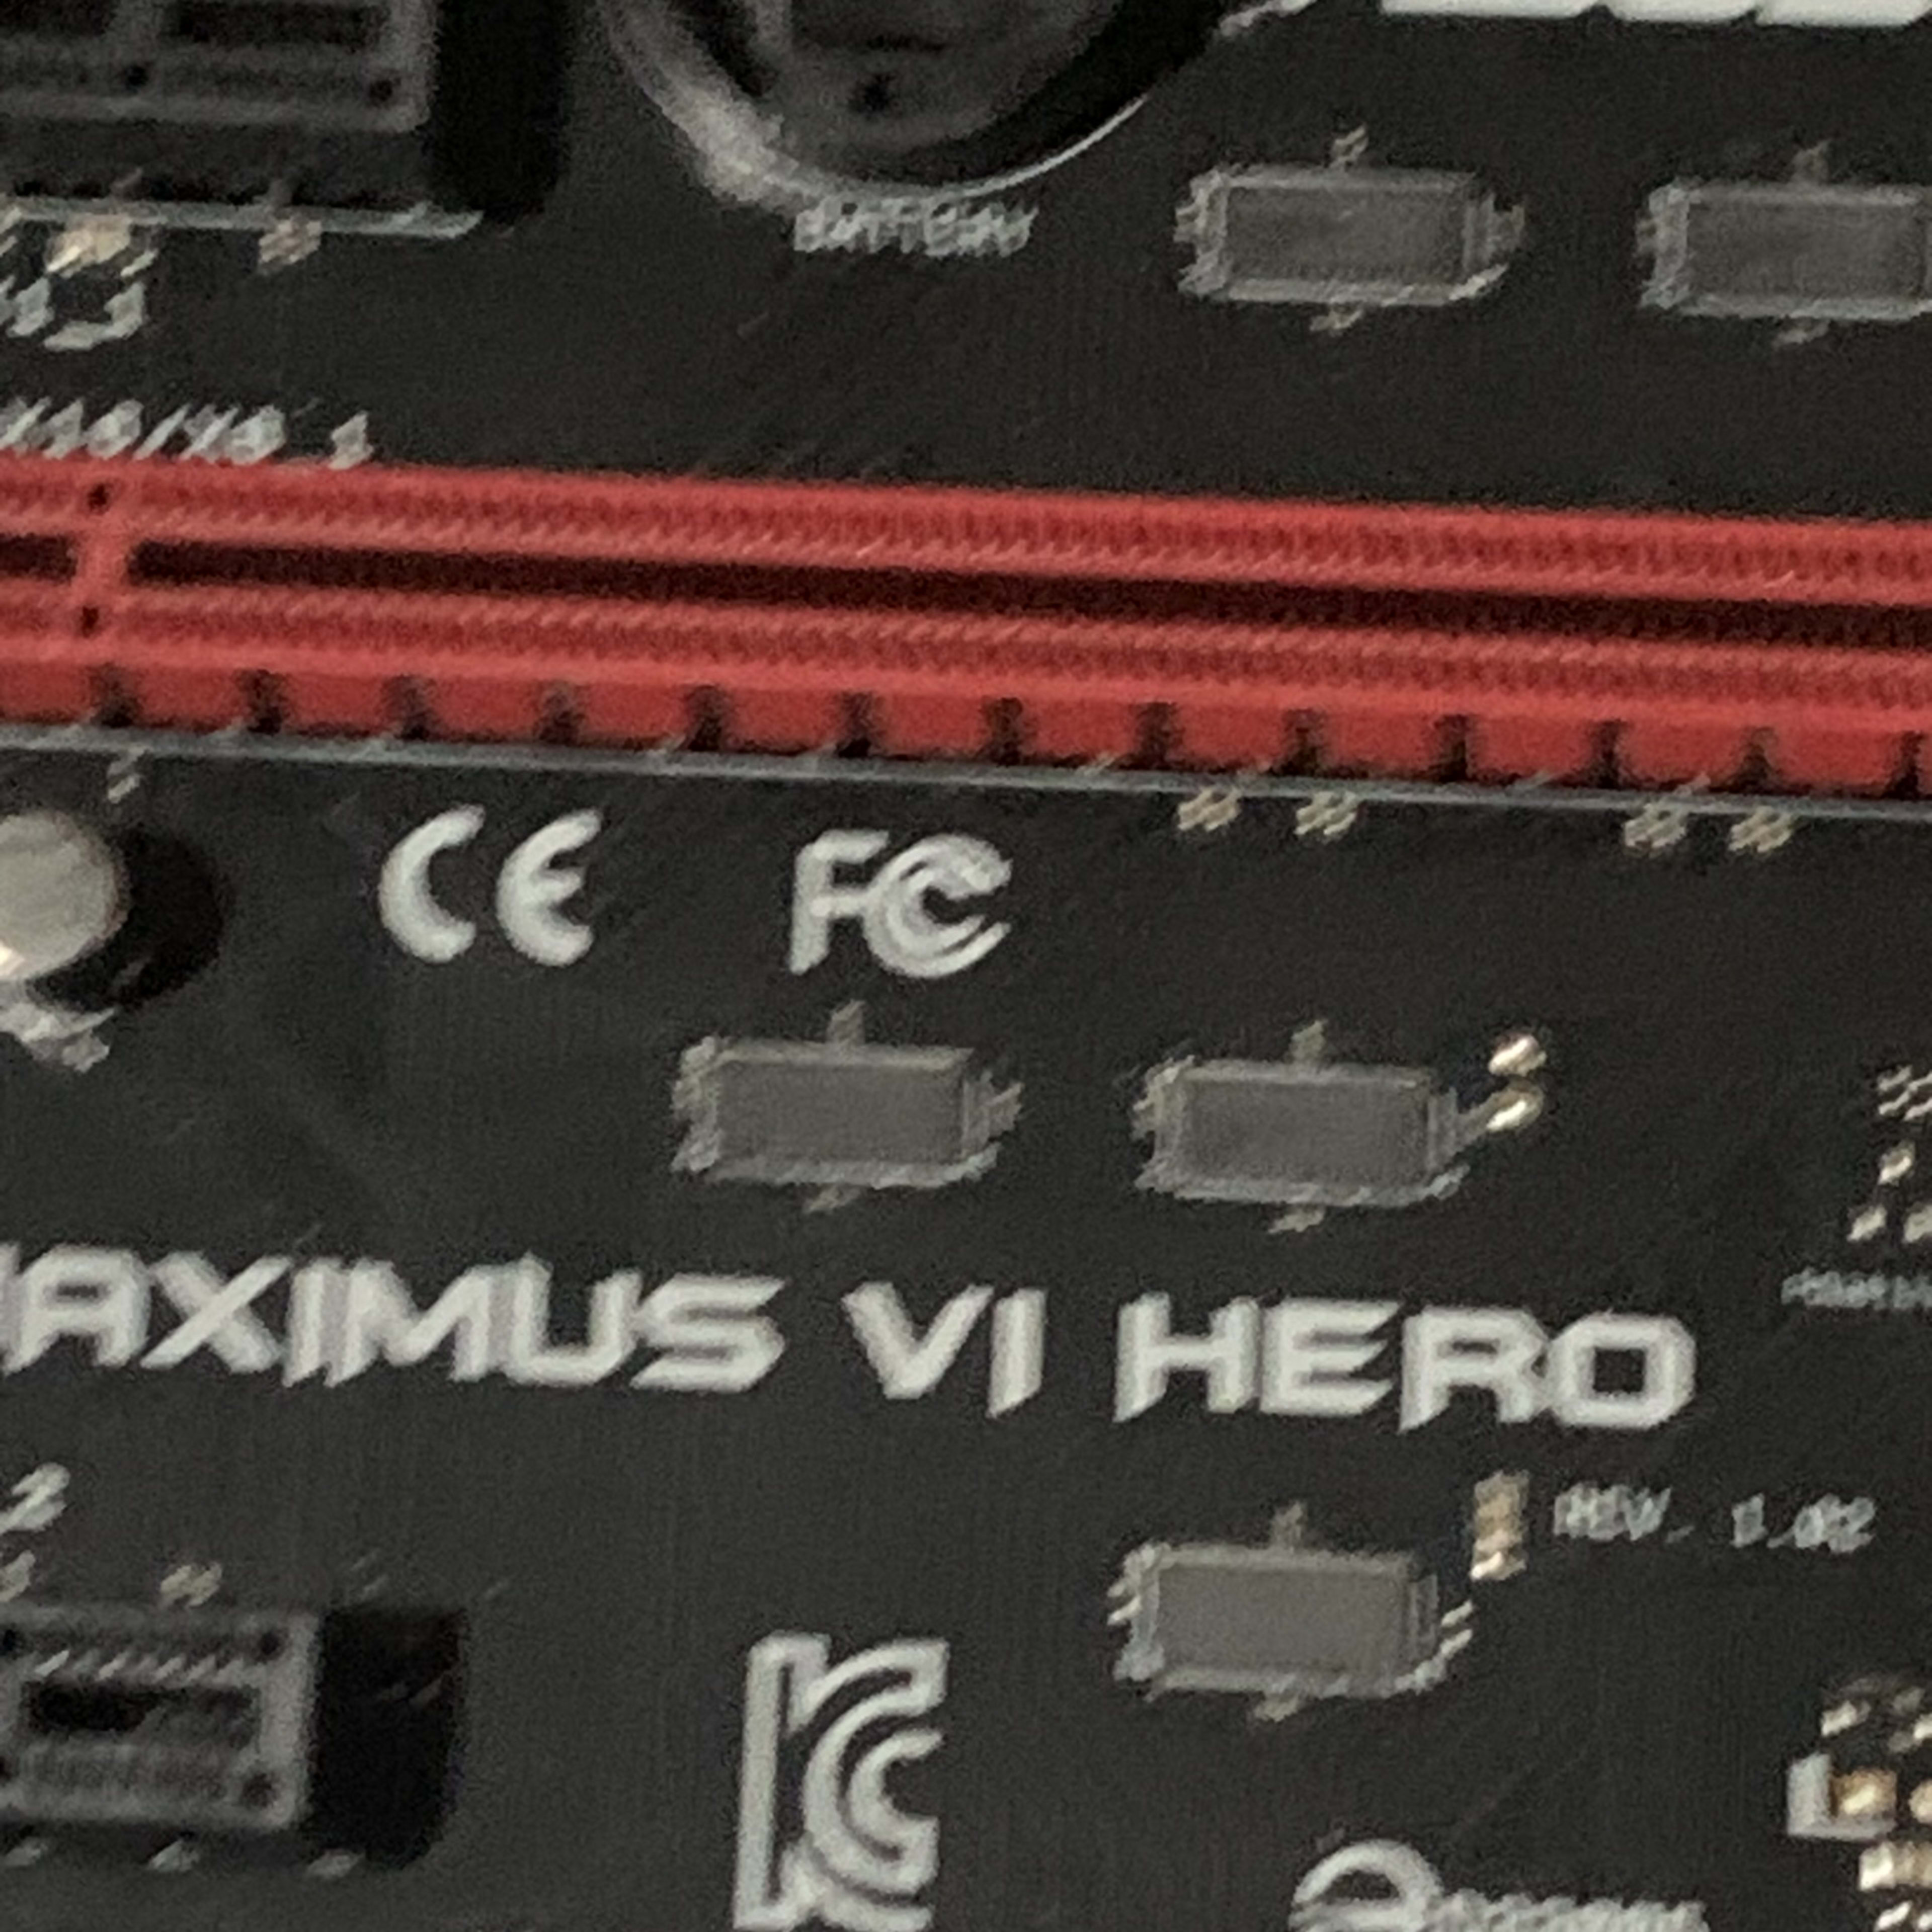 ASUS MAXIMUS VI HERO, LGA 1150, Intel Motherboard